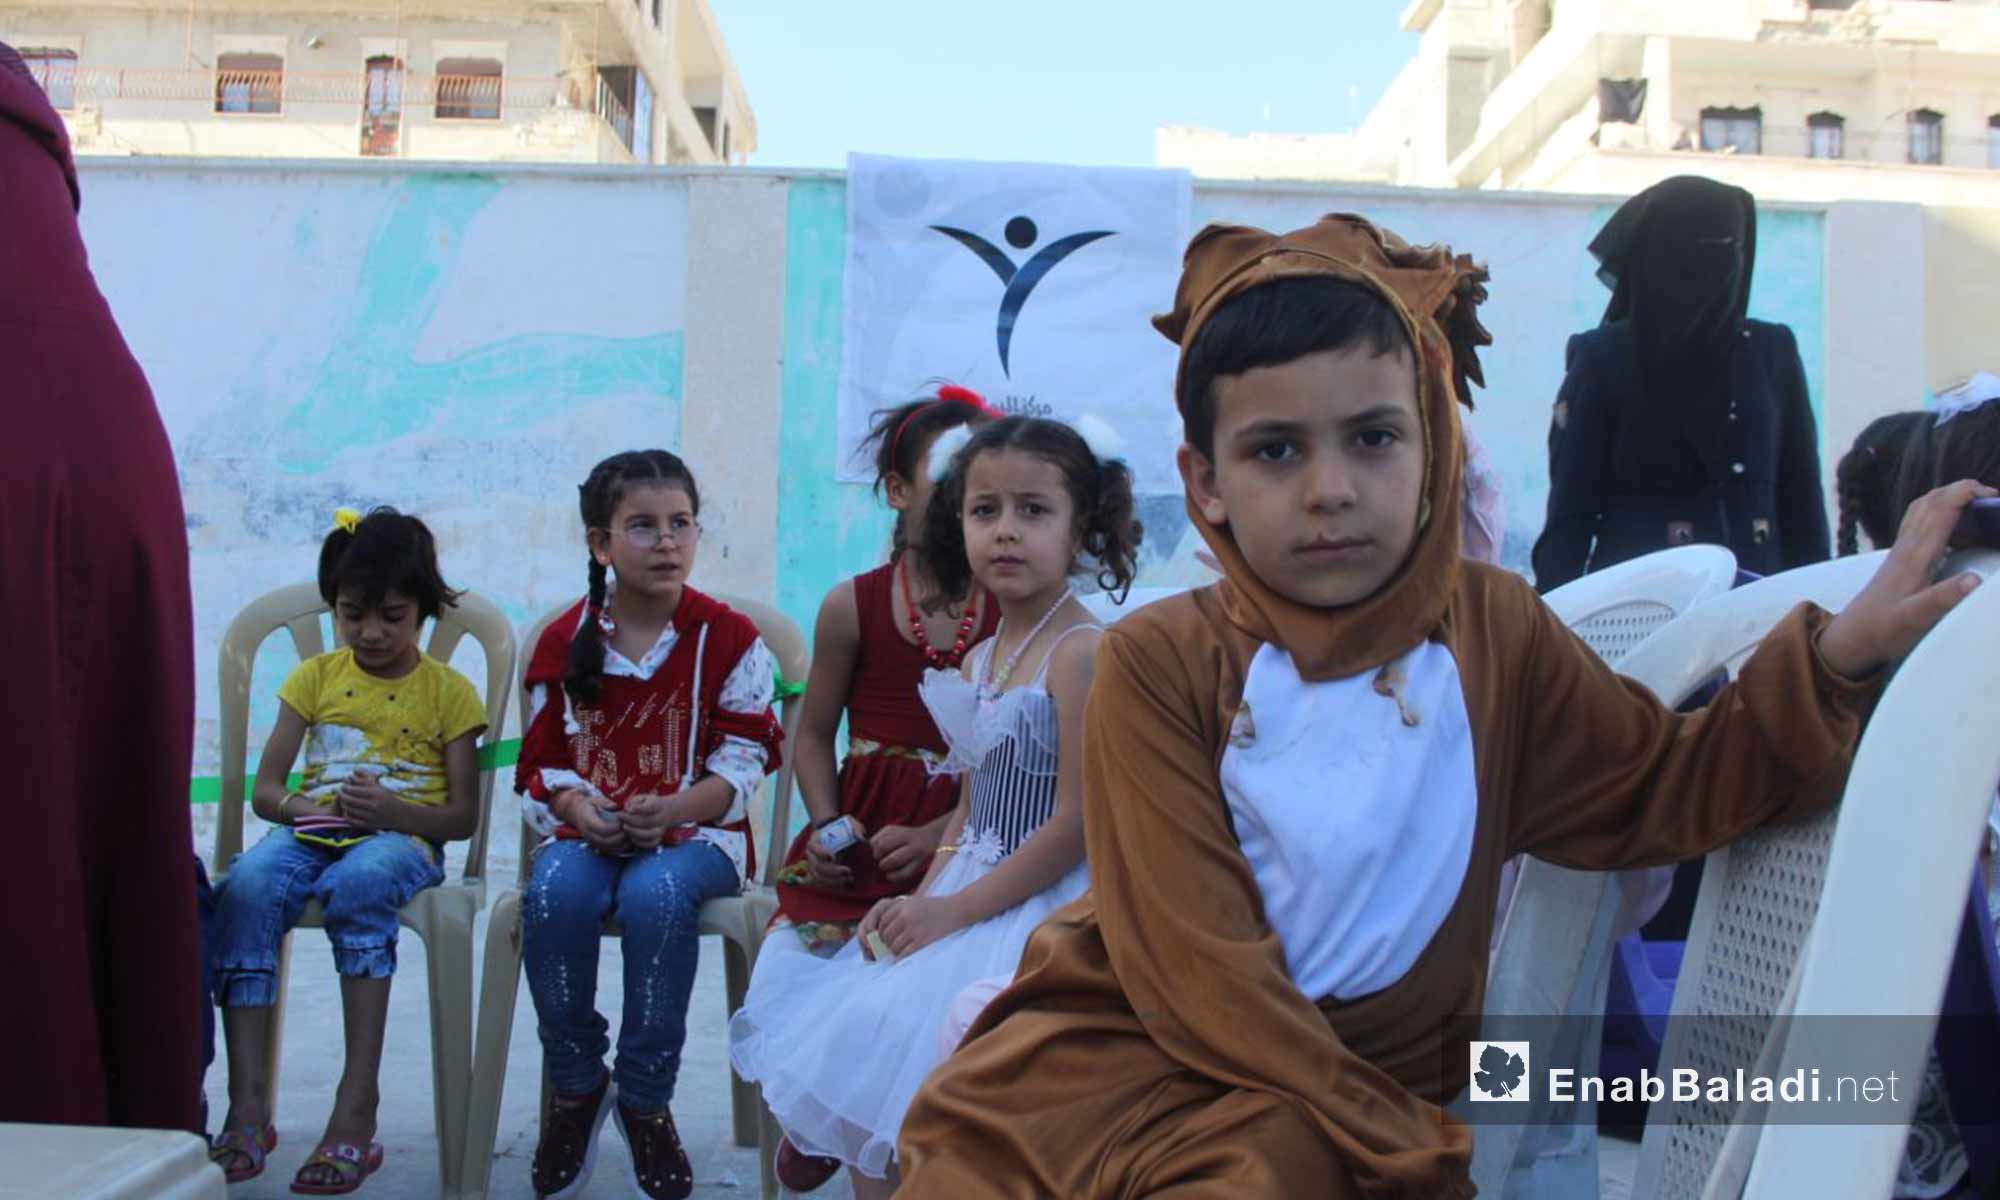 حفل للأطفال بمناسبة عيد الفطر في مدينة اريحا بريف حمص - 17 حزيران 2018 (عنب بلدي)